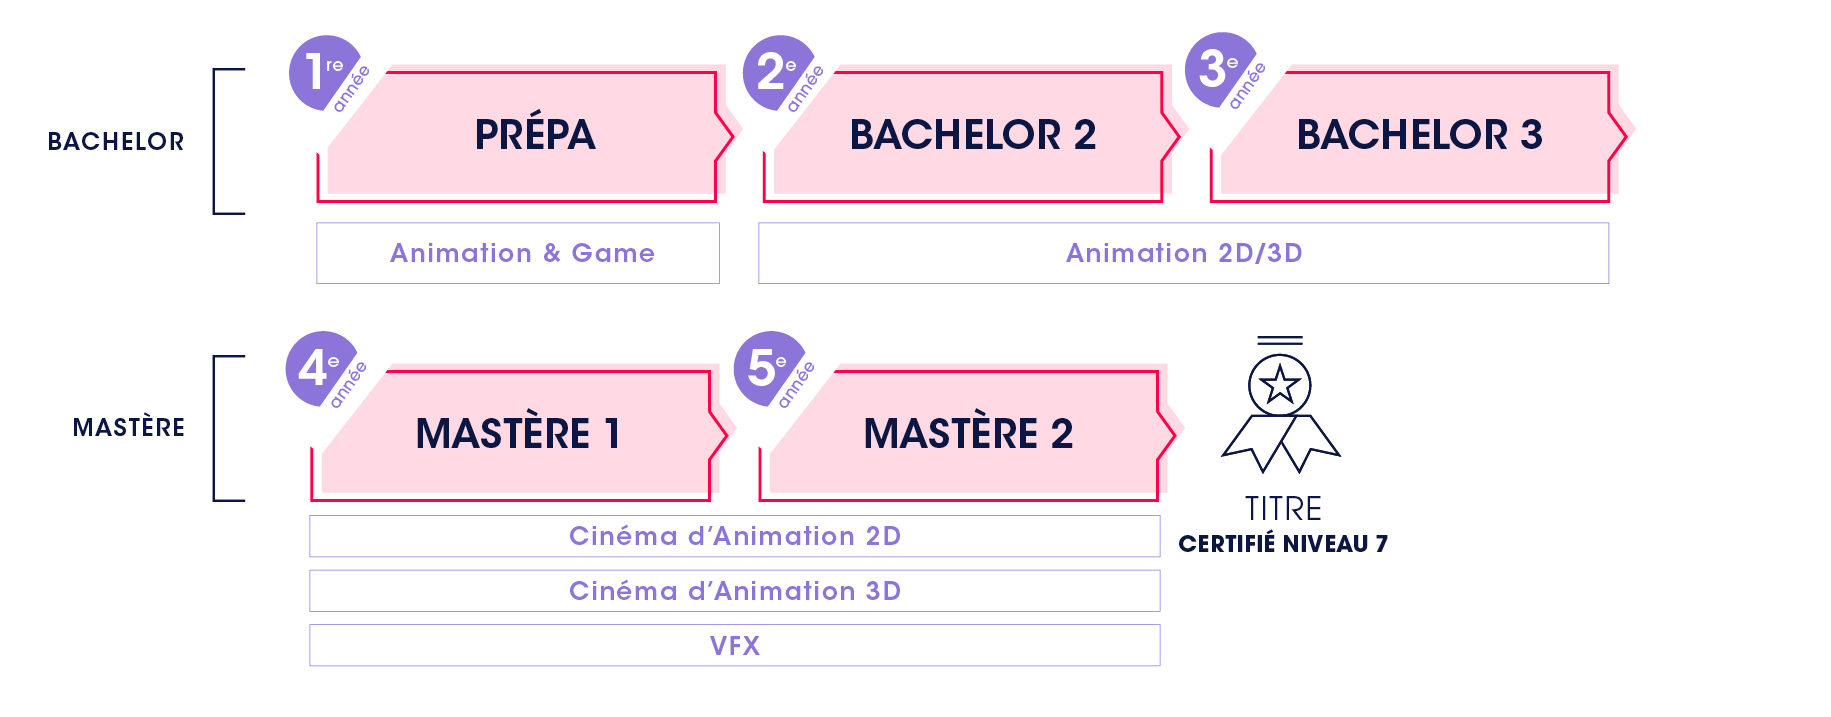 Étudier le Cinéma d'Animation 2D/3D - Prépa, Bachelor, Mastères 